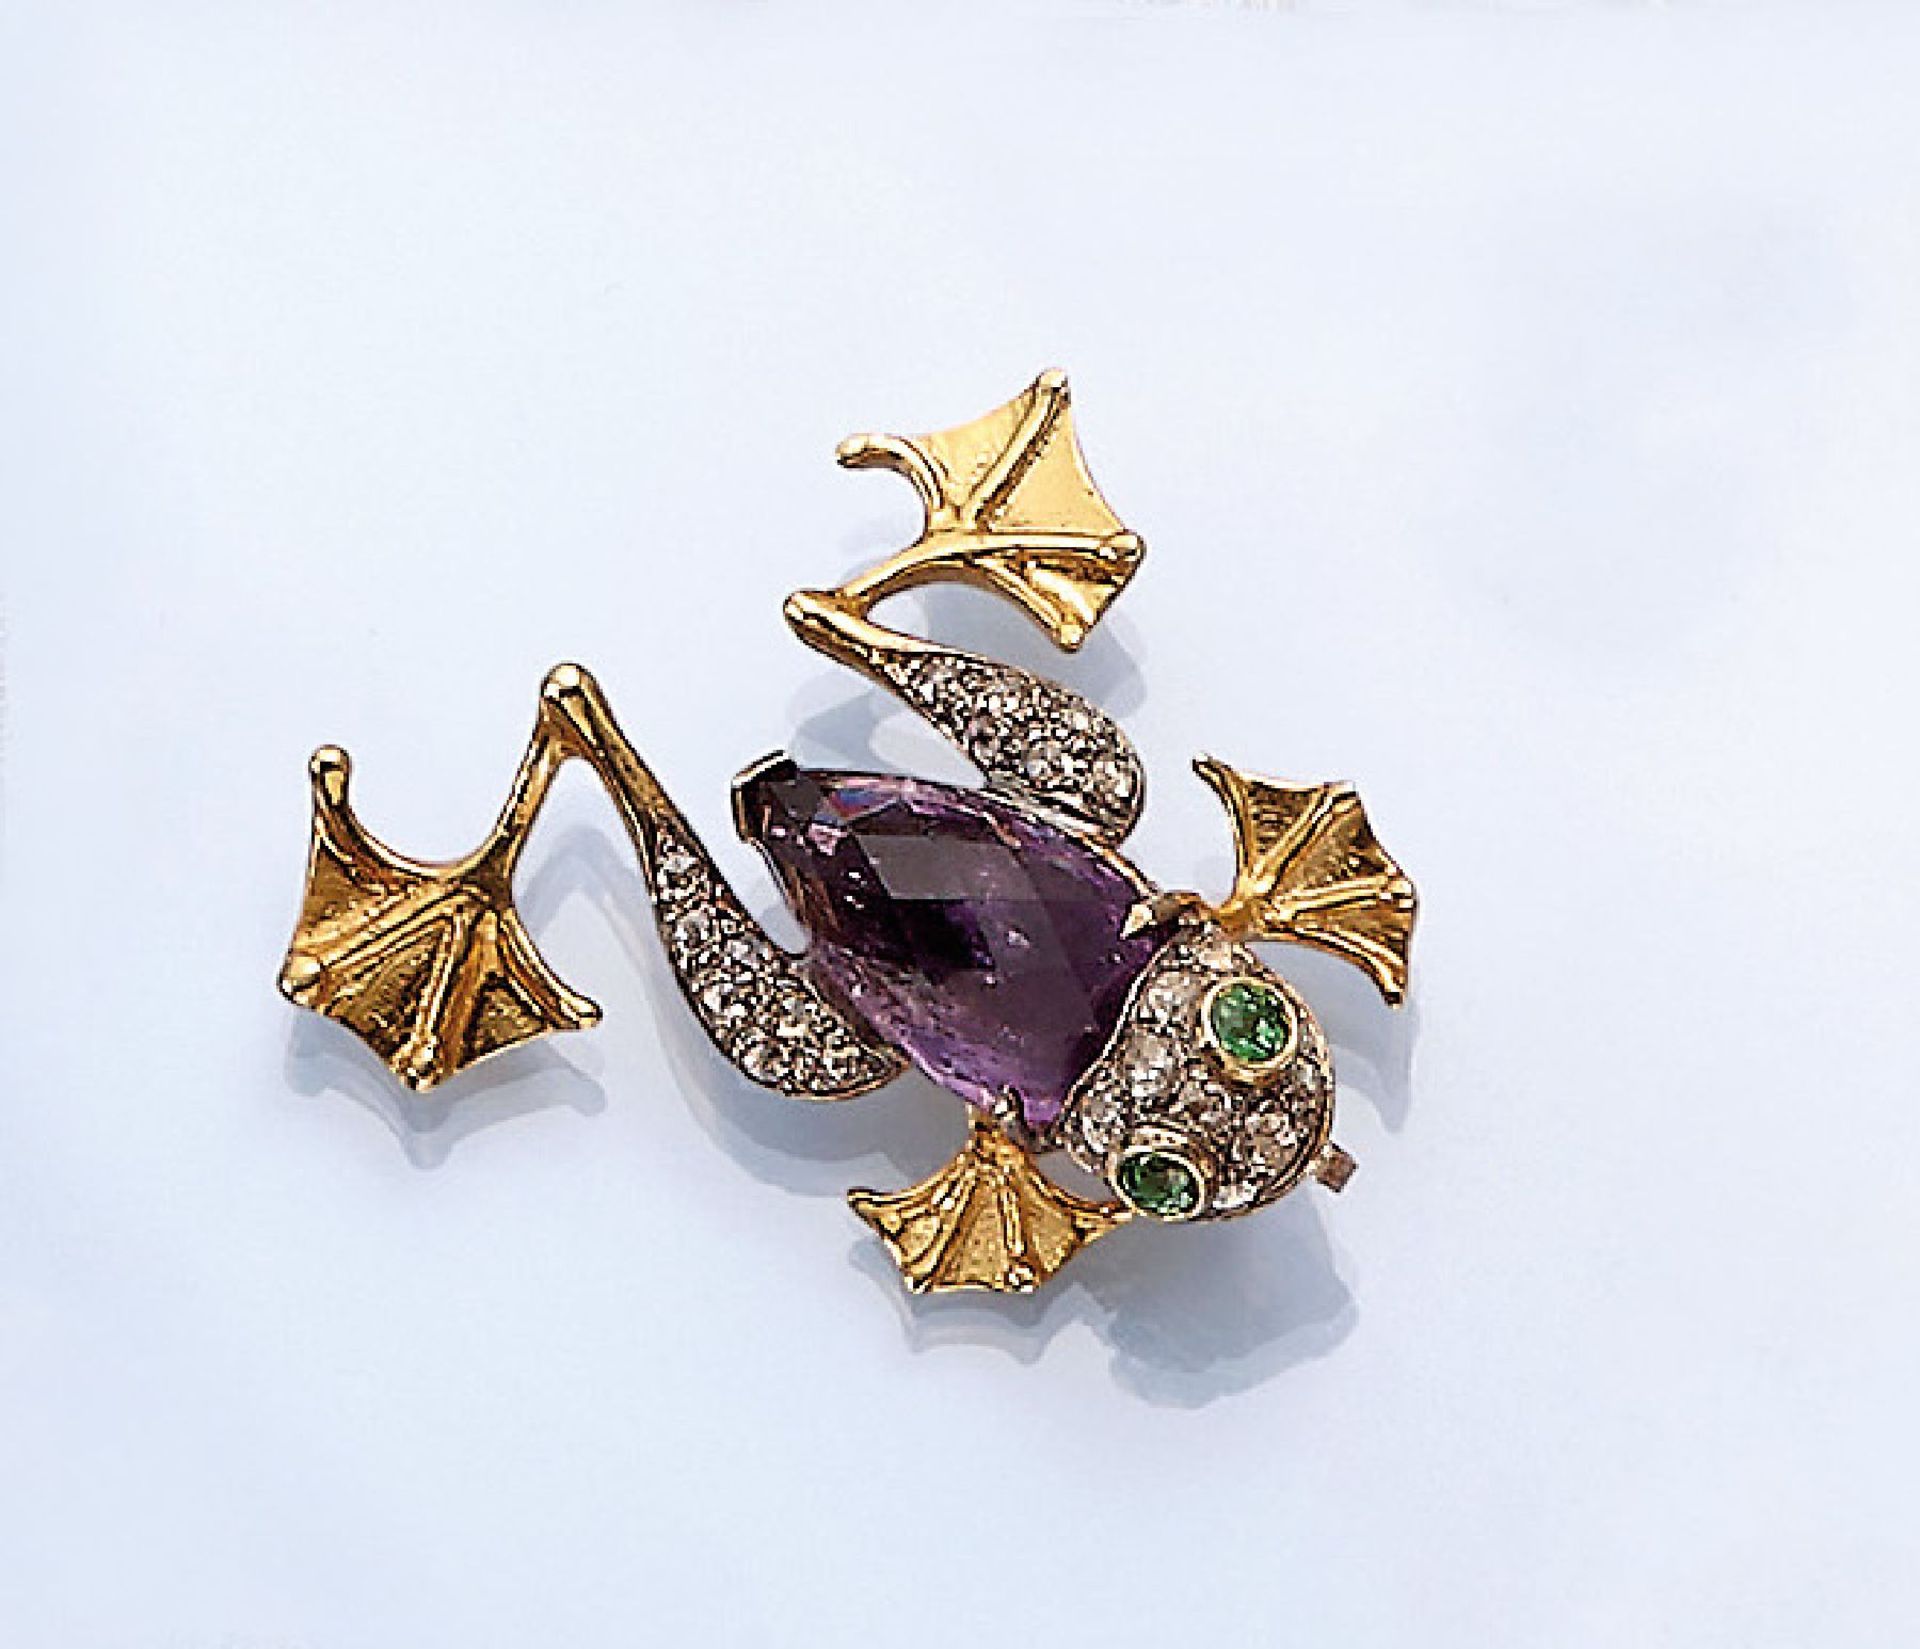 Brosche "Frosch" mit Farbsteinen und Diamanten, Gold und Silber, nach altem Vorbild, Körper aus